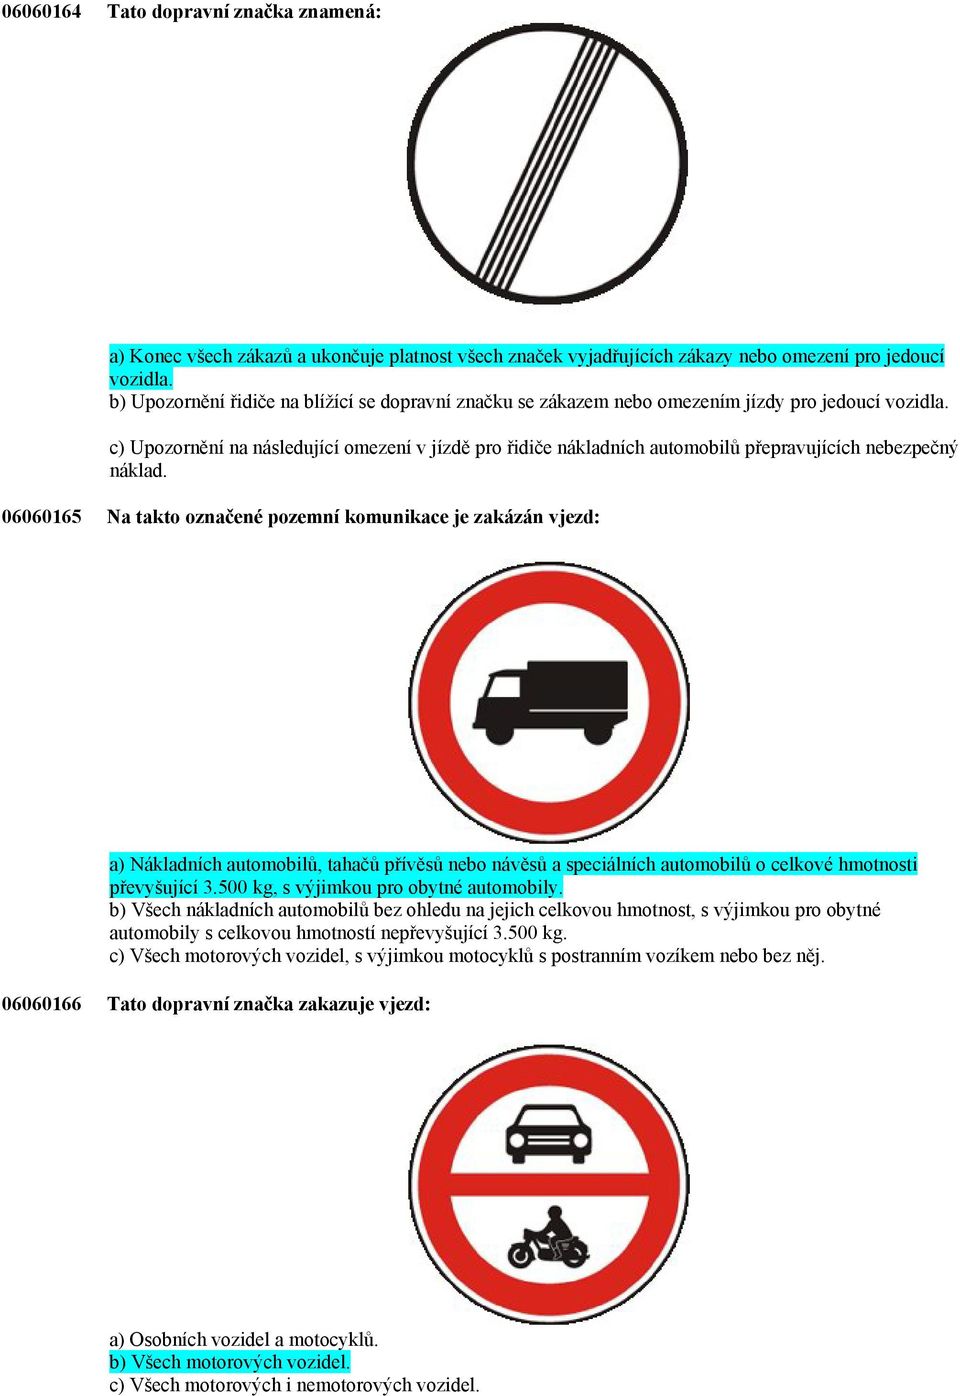 c) Upozornění na následující omezení v jízdě pro řidiče nákladních automobilů přepravujících nebezpečný náklad.